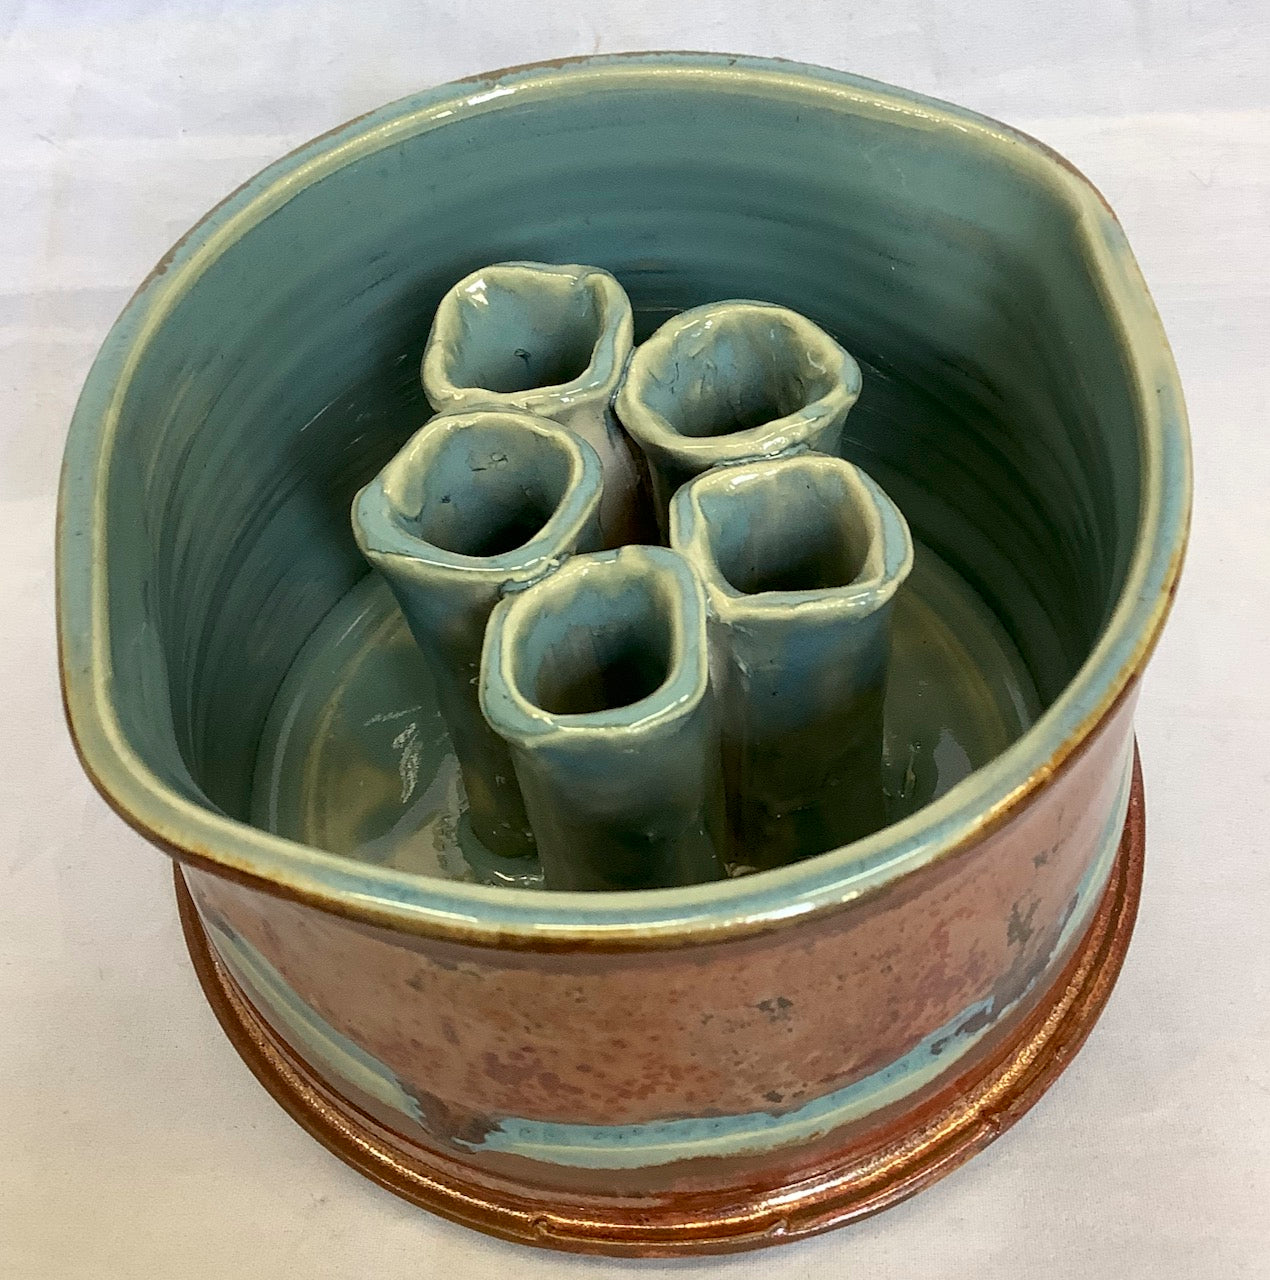 5 stem vase copper/turquoise